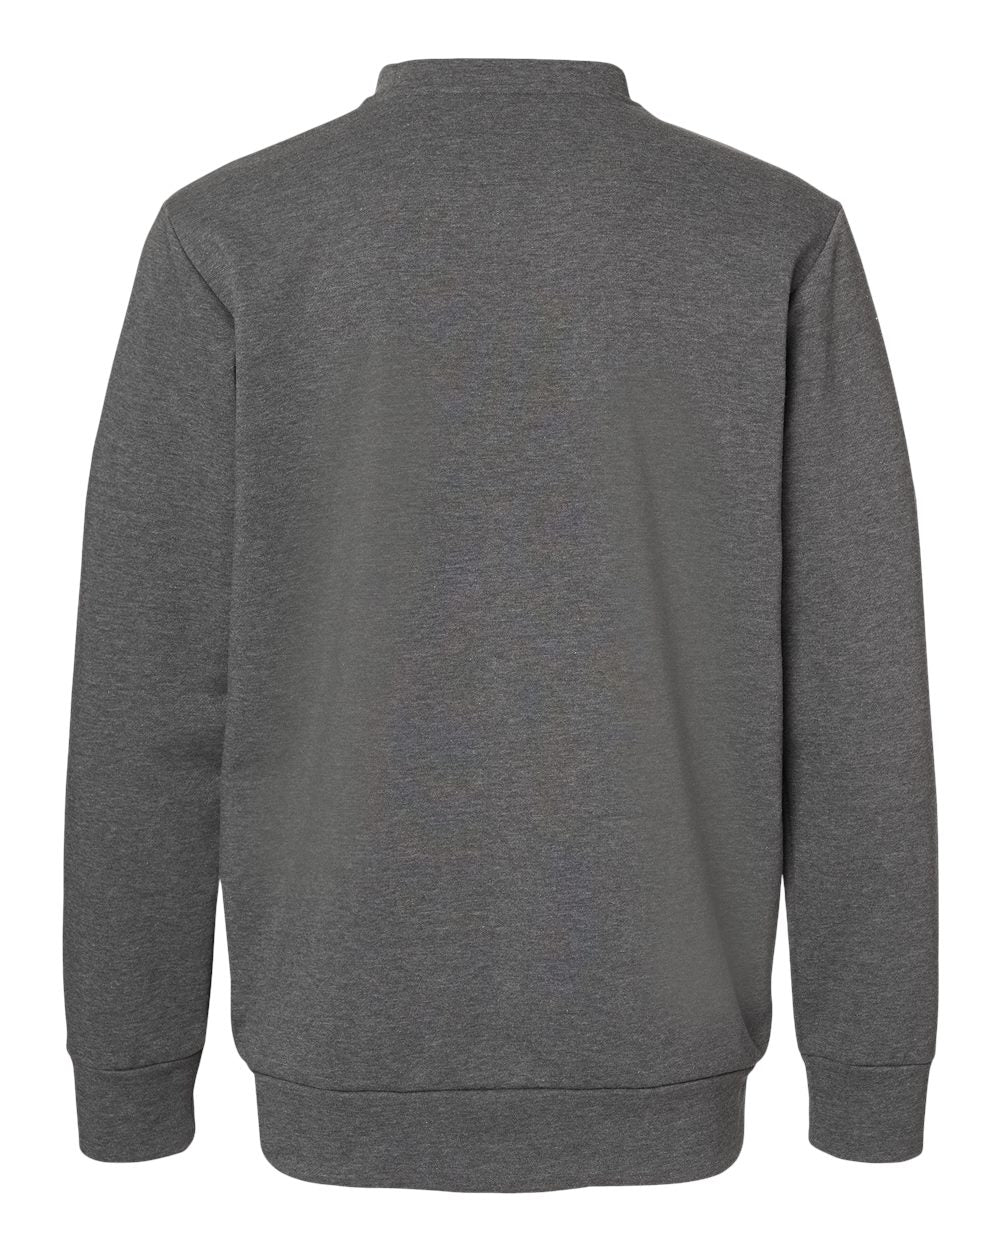 Adidas A434 Fleece Crewneck Sweatshirt #color_Dark Grey Heather